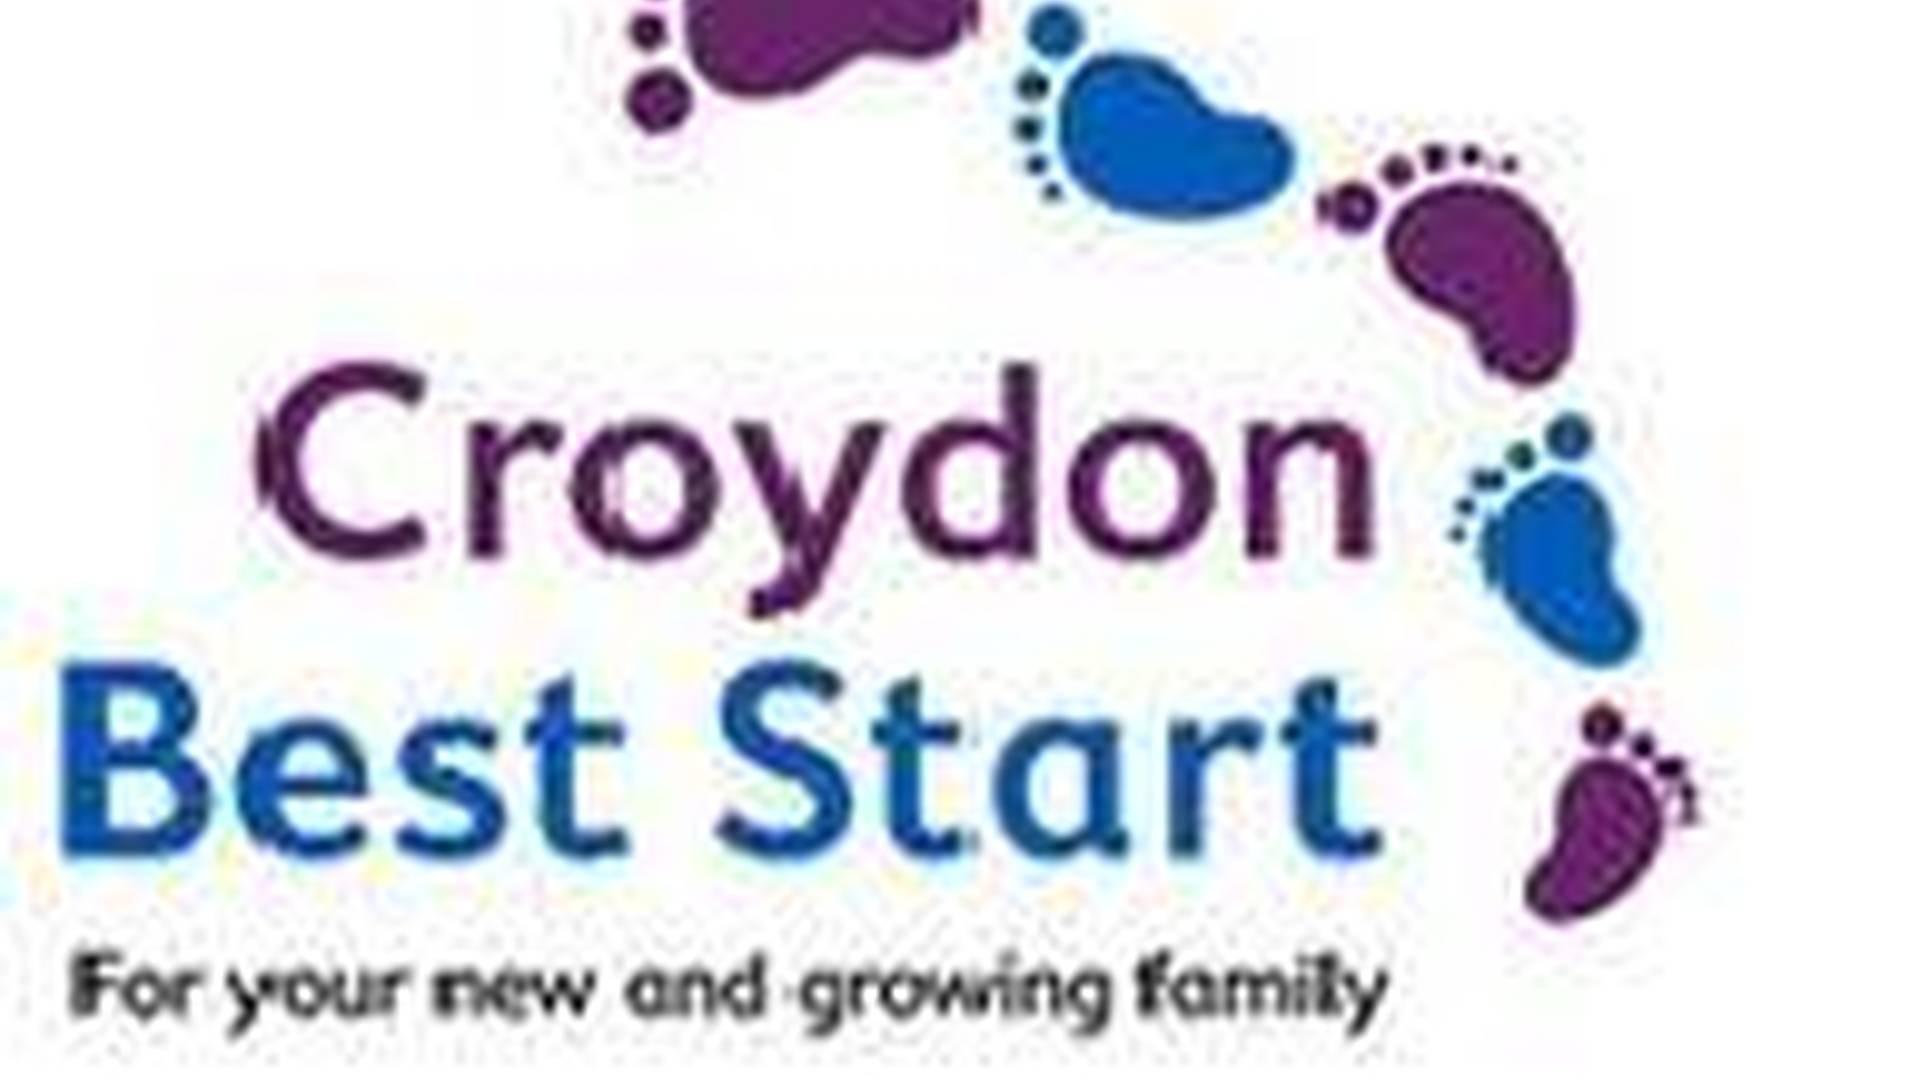 Croydon Best Start photo